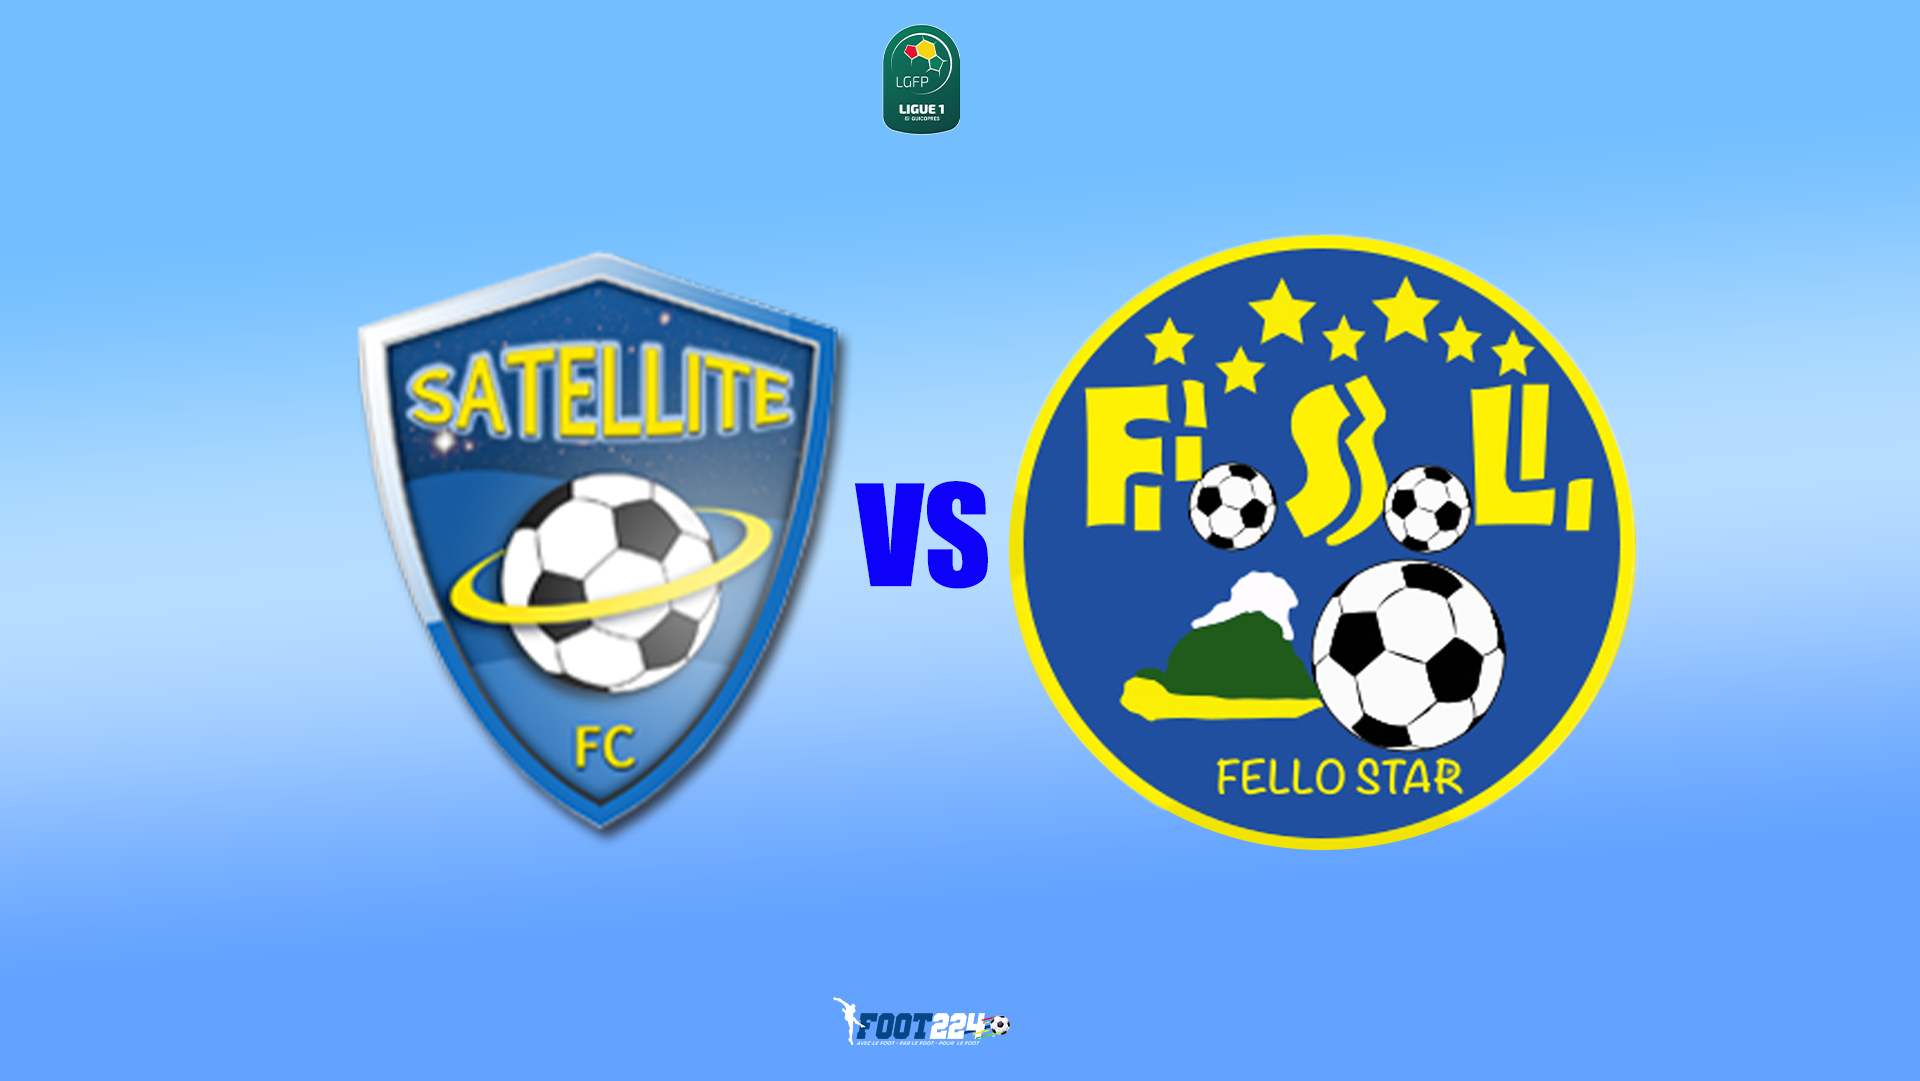 SATELLITE FC VS FELLO STAR